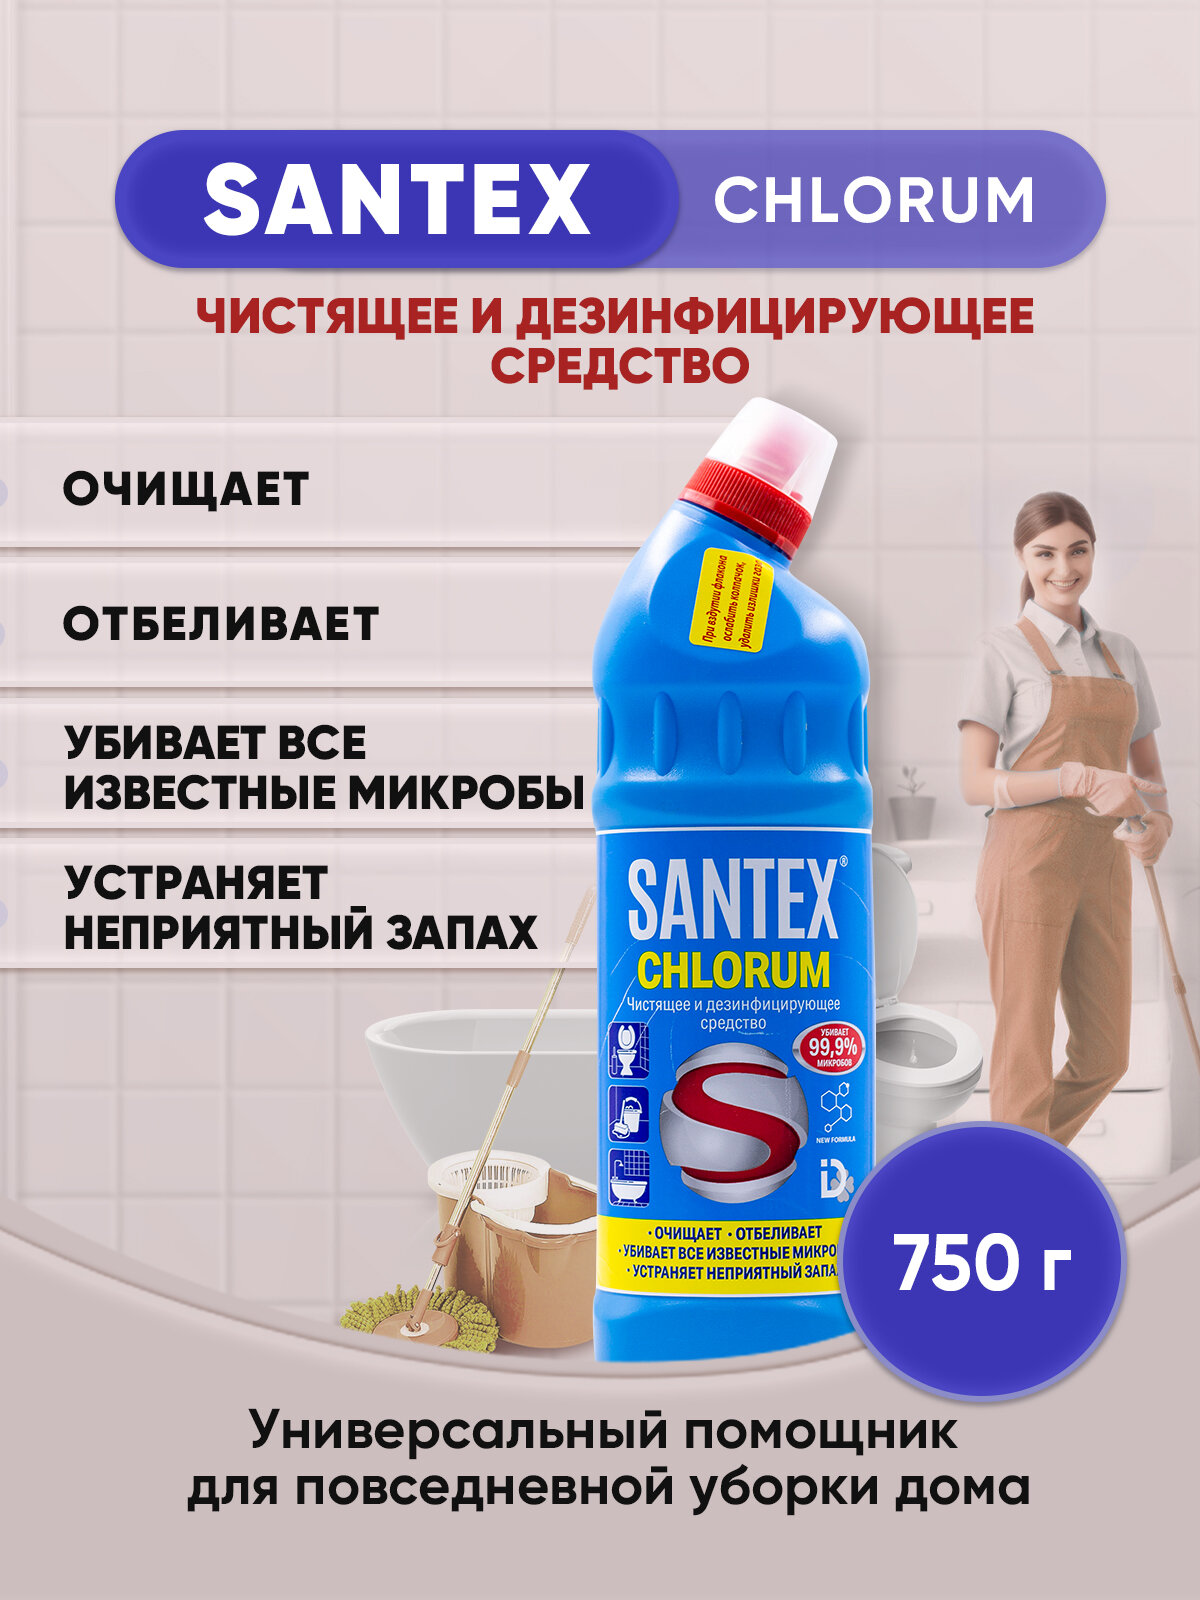 SANTEX CHLORUM гель с хлором 750г/1шт